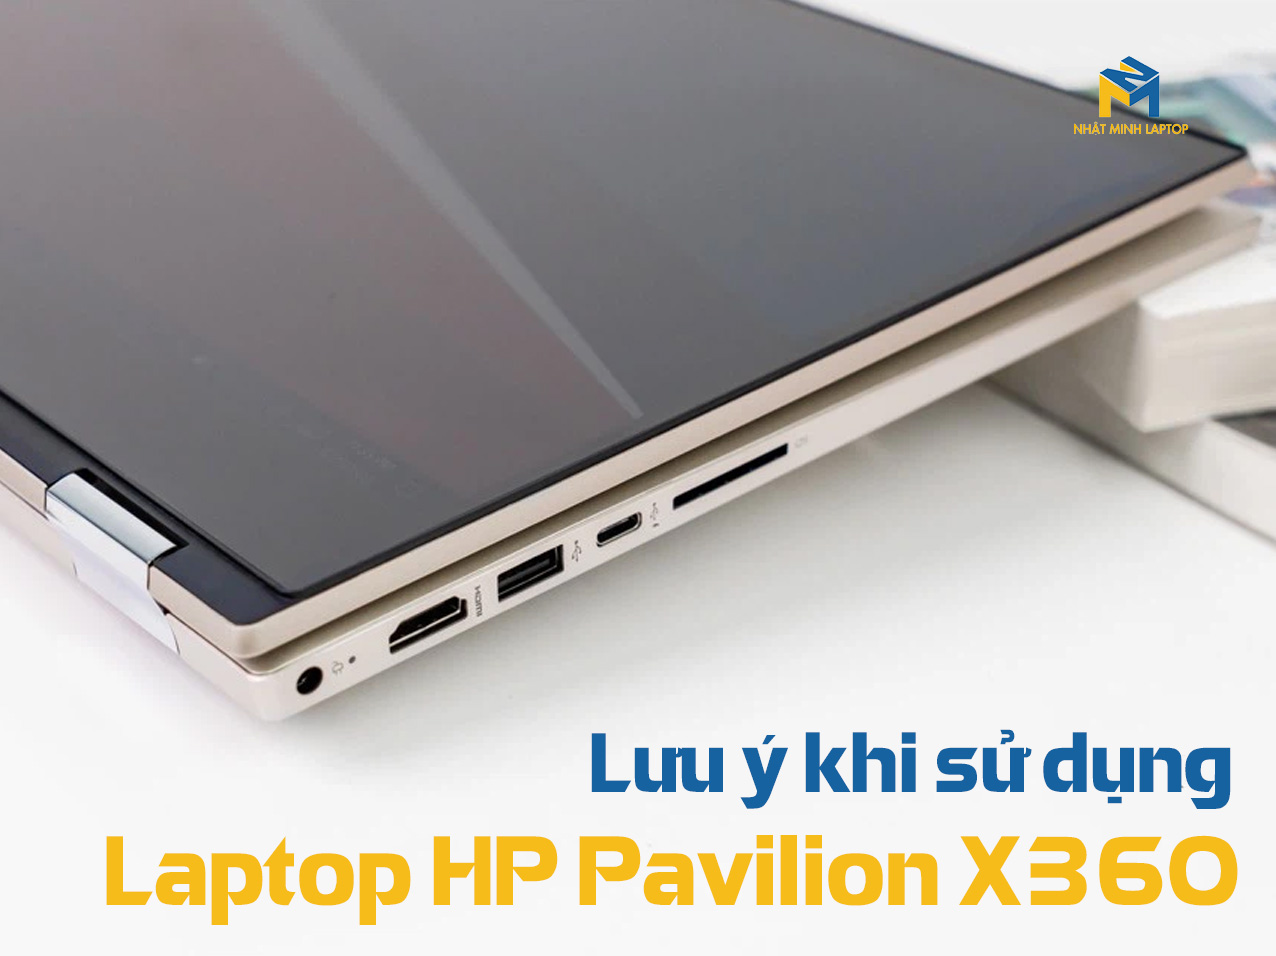 Khi sử dụng Laptop HP Pavilion X360 cần lưu ý điều gì?